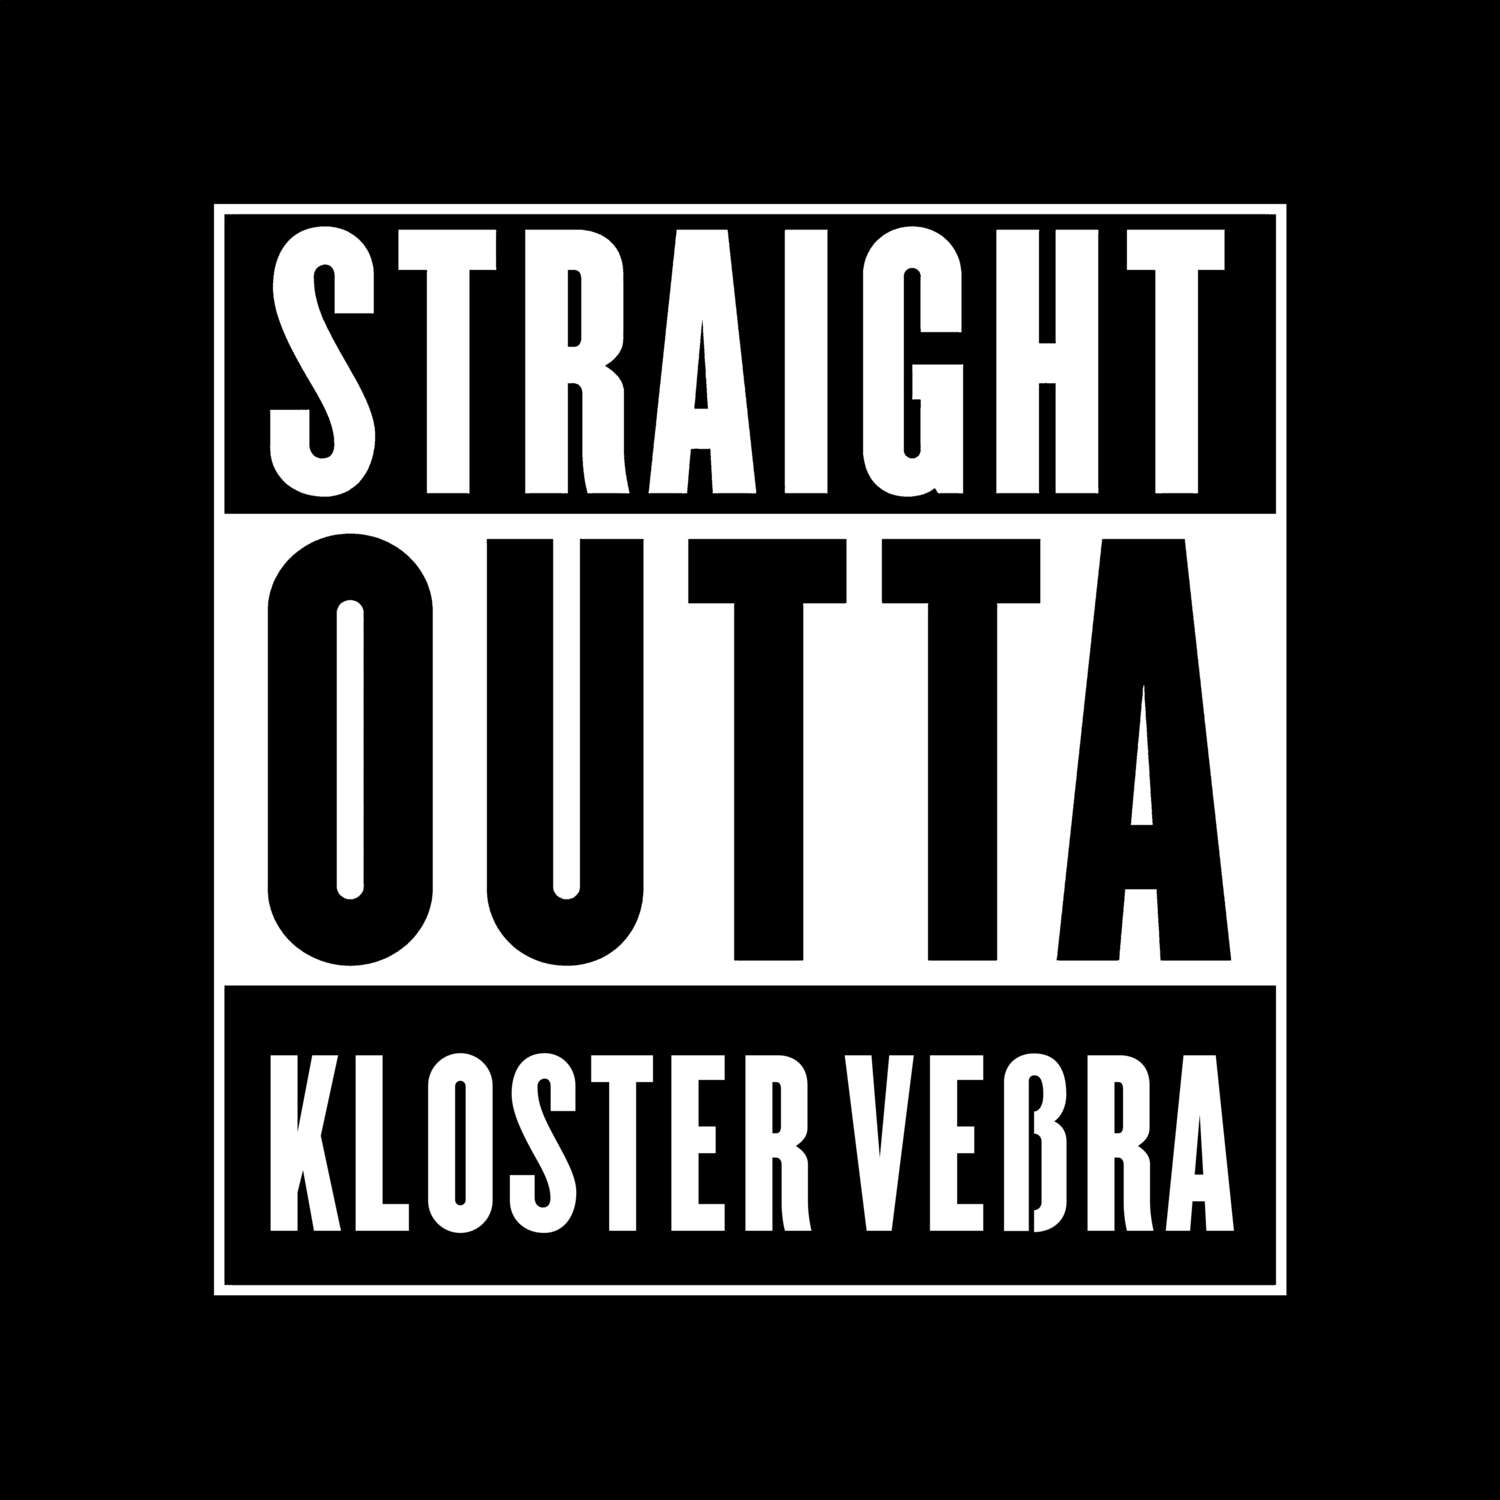 Kloster Veßra T-Shirt »Straight Outta«